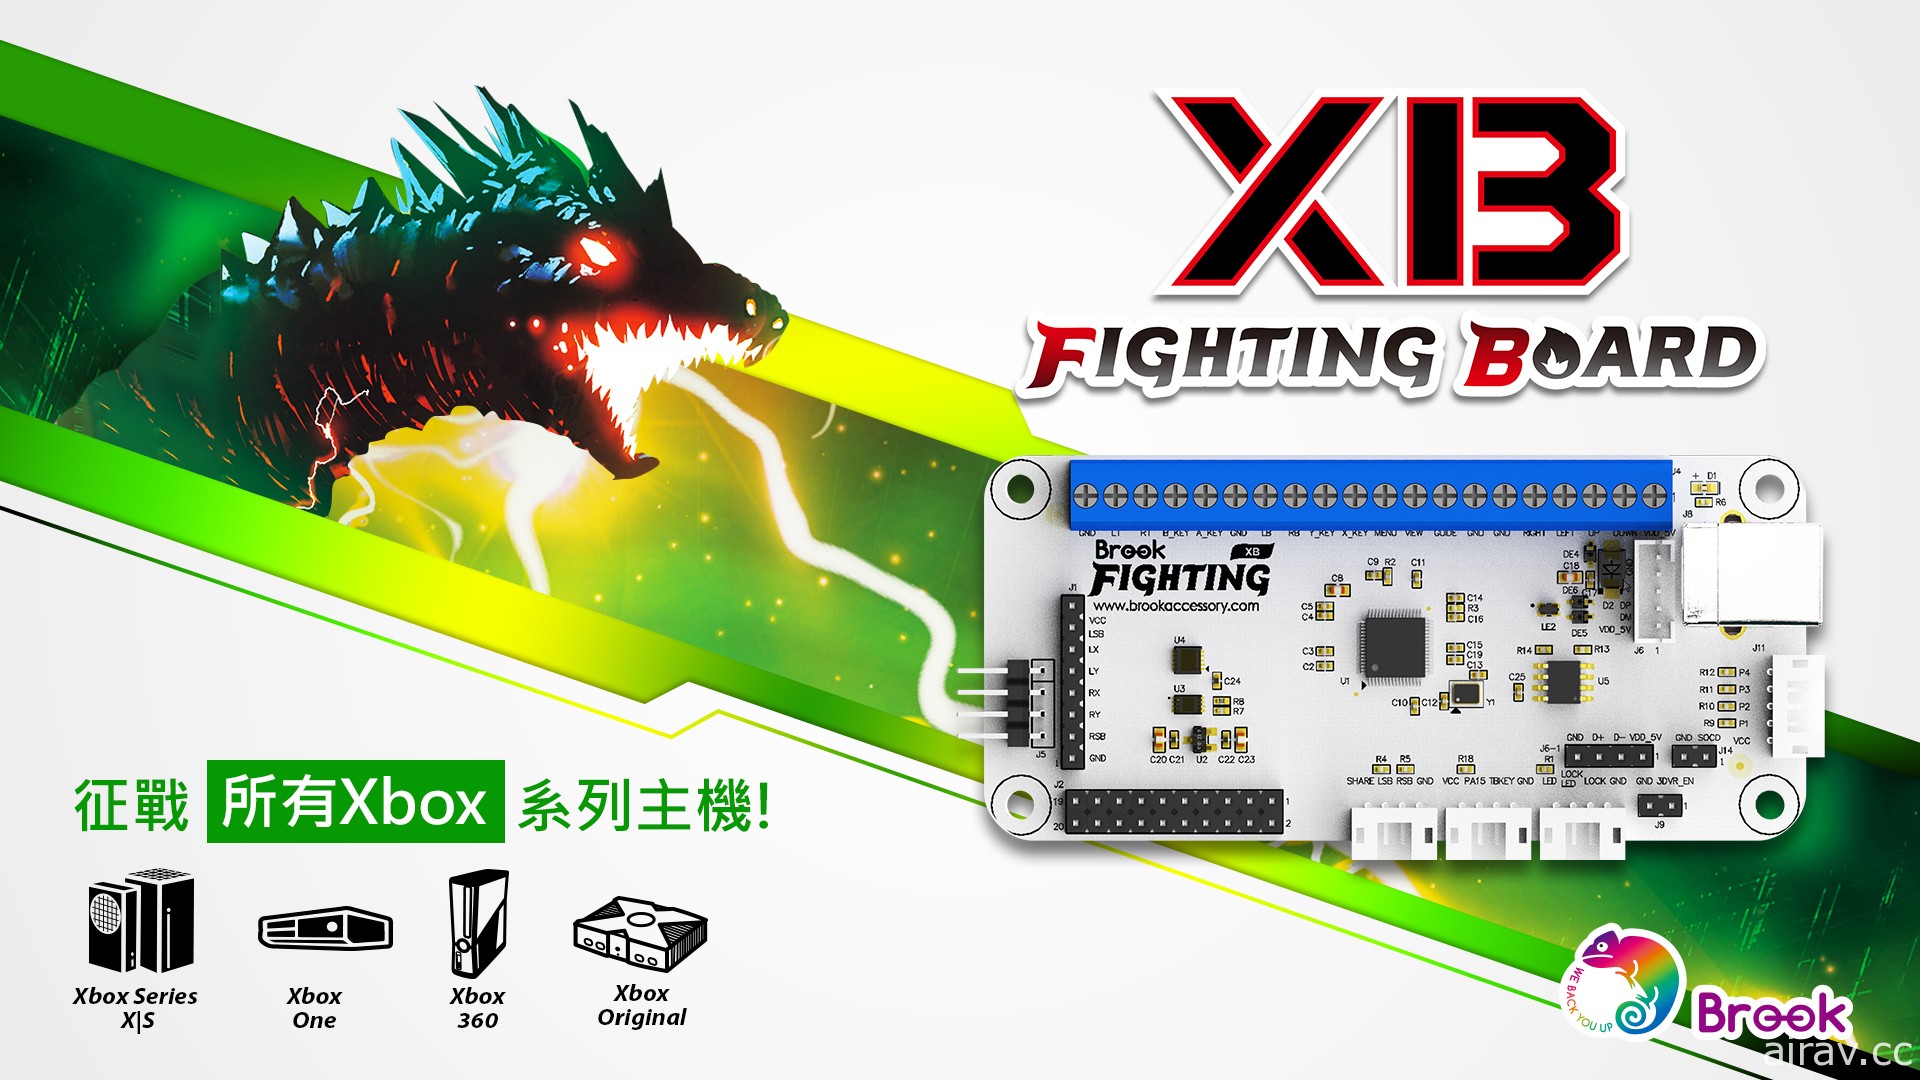 Brook 推出支援 Xbox 全系列主机的格斗摇杆机板“XB Fighting Board”